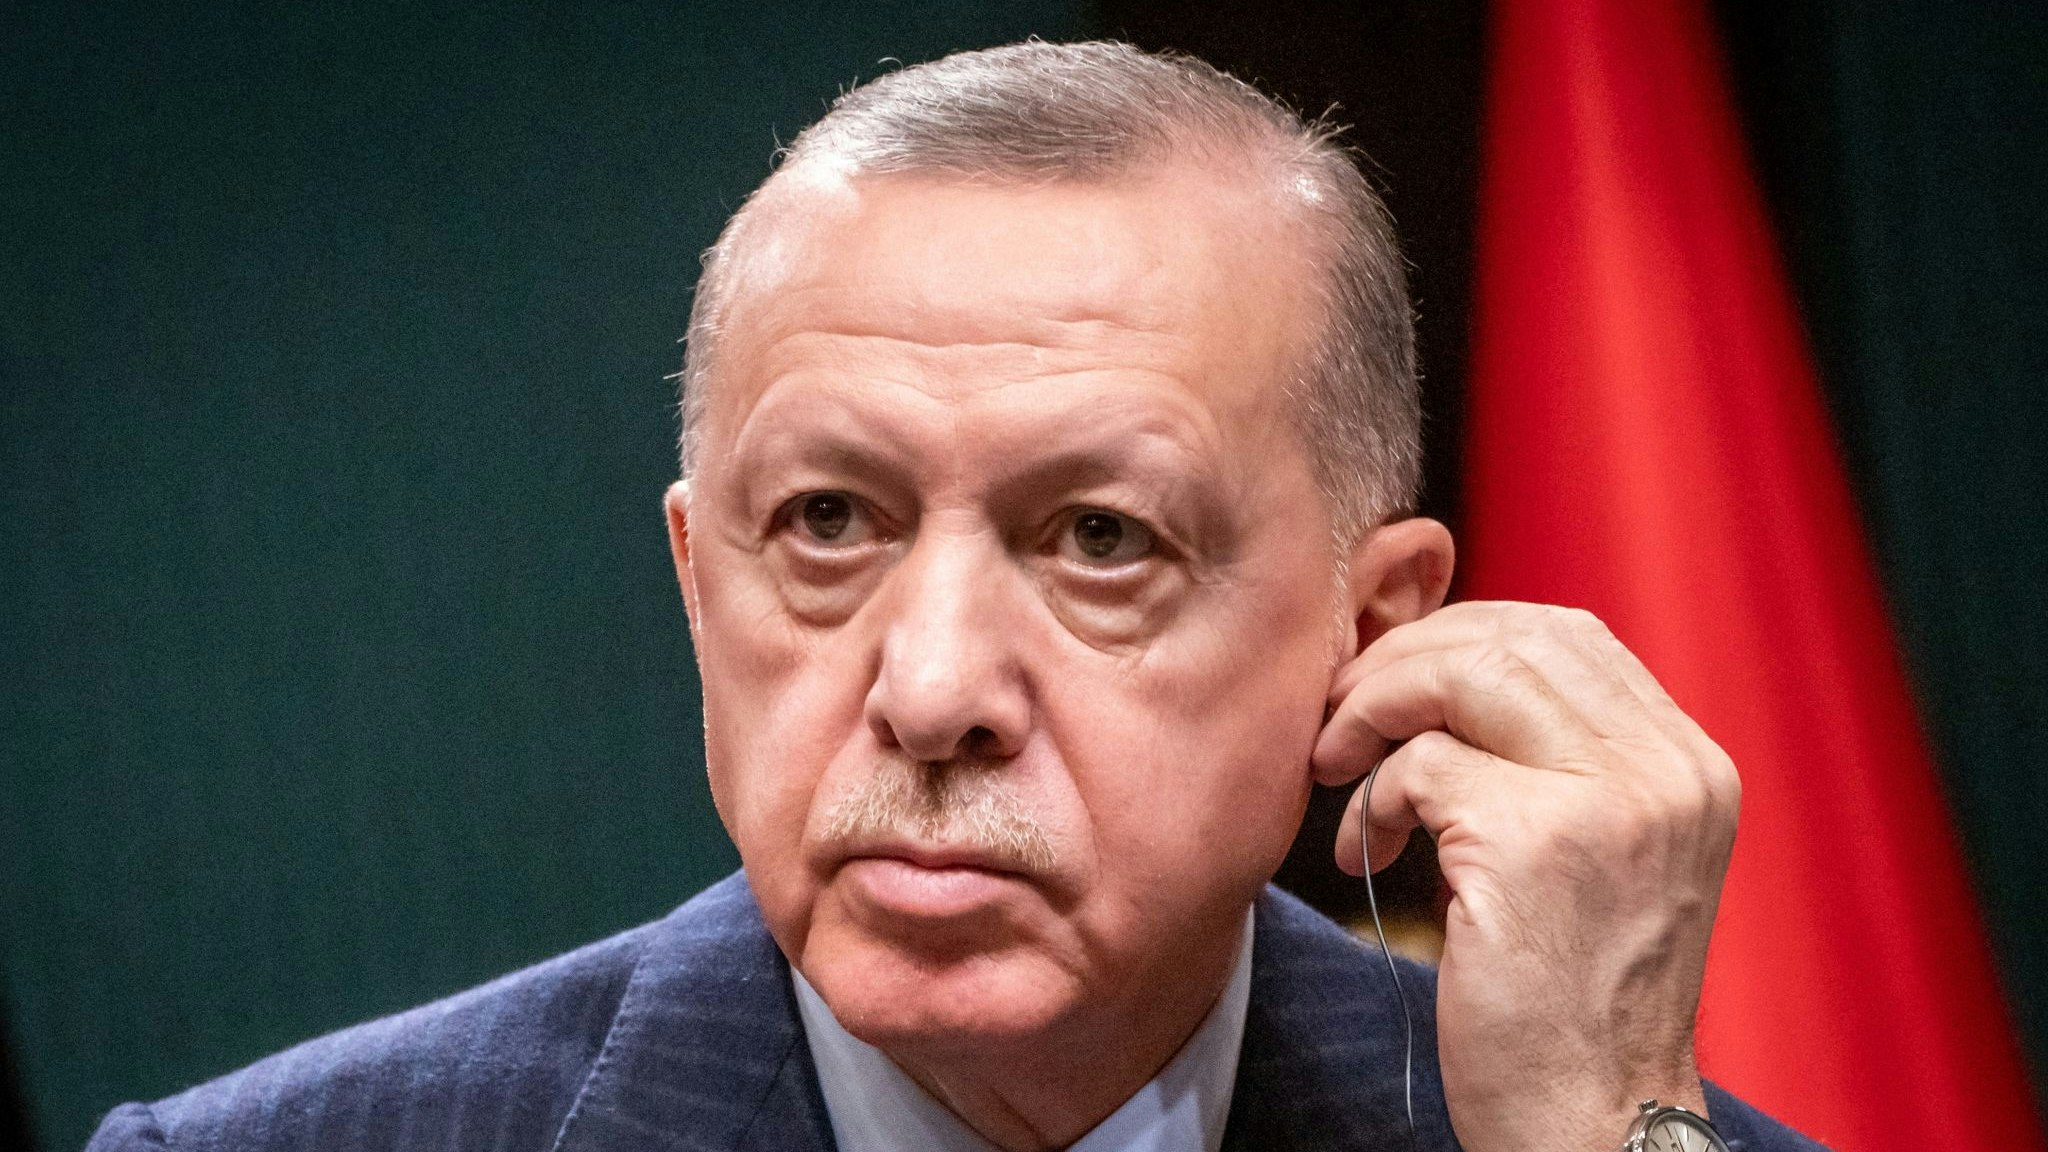 Recep Tayyip Erdogan nimmt an einer Pressekonferenz teil. Foto: dpa/Kappeler